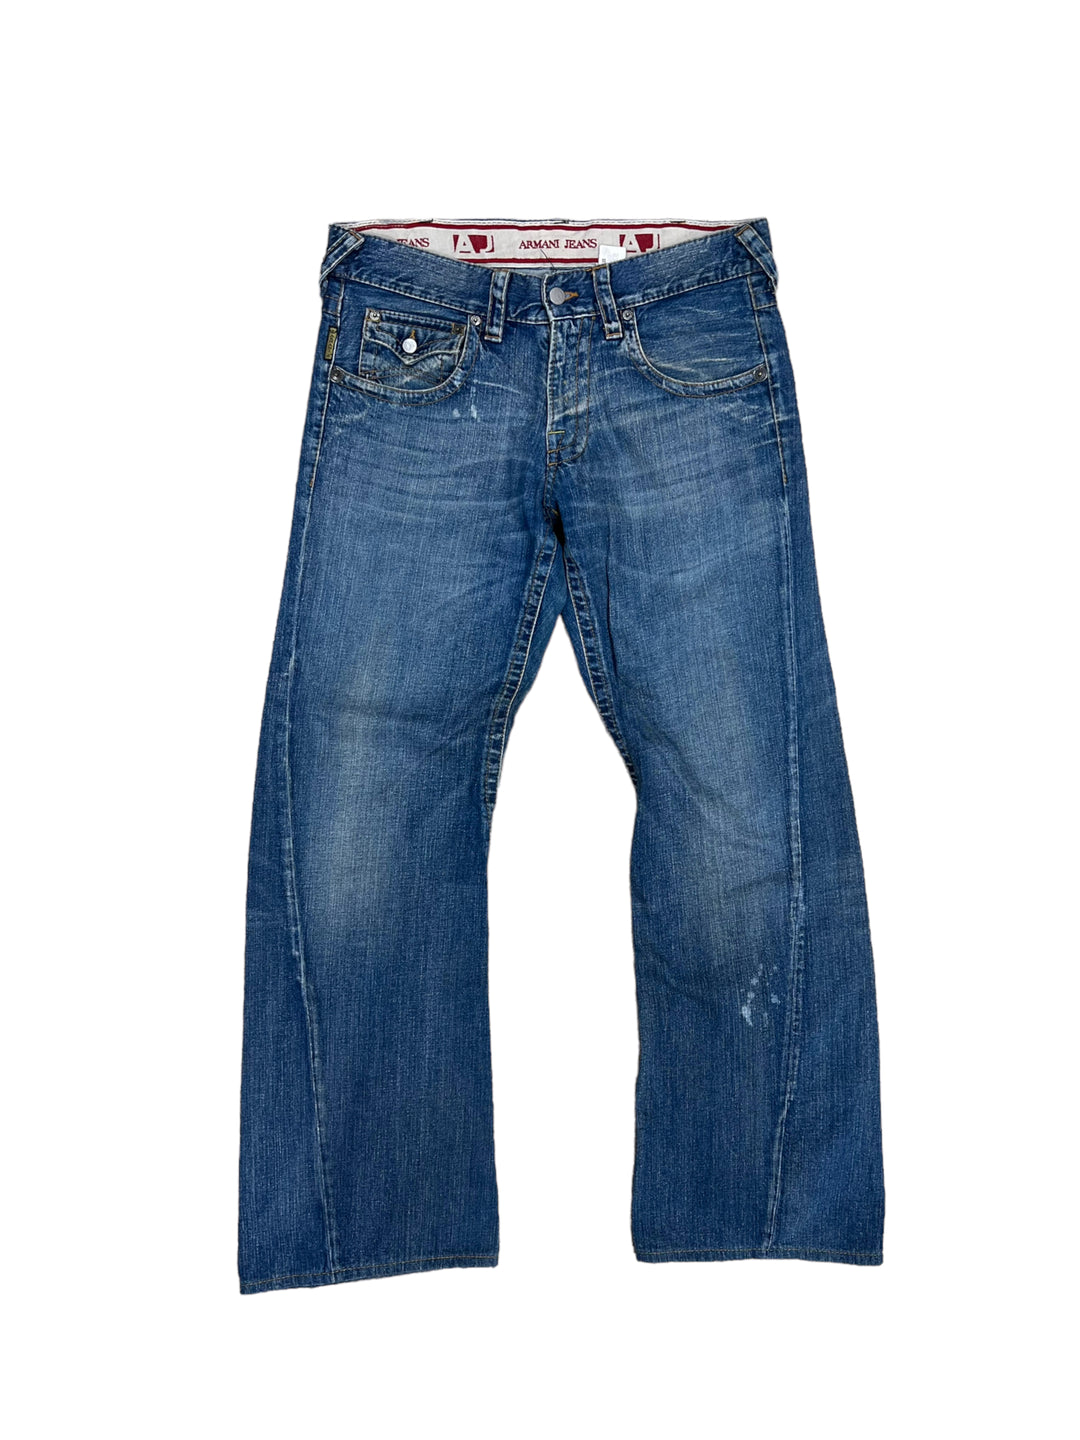 Armani y2k low waist jeans Men’s M/L (34)